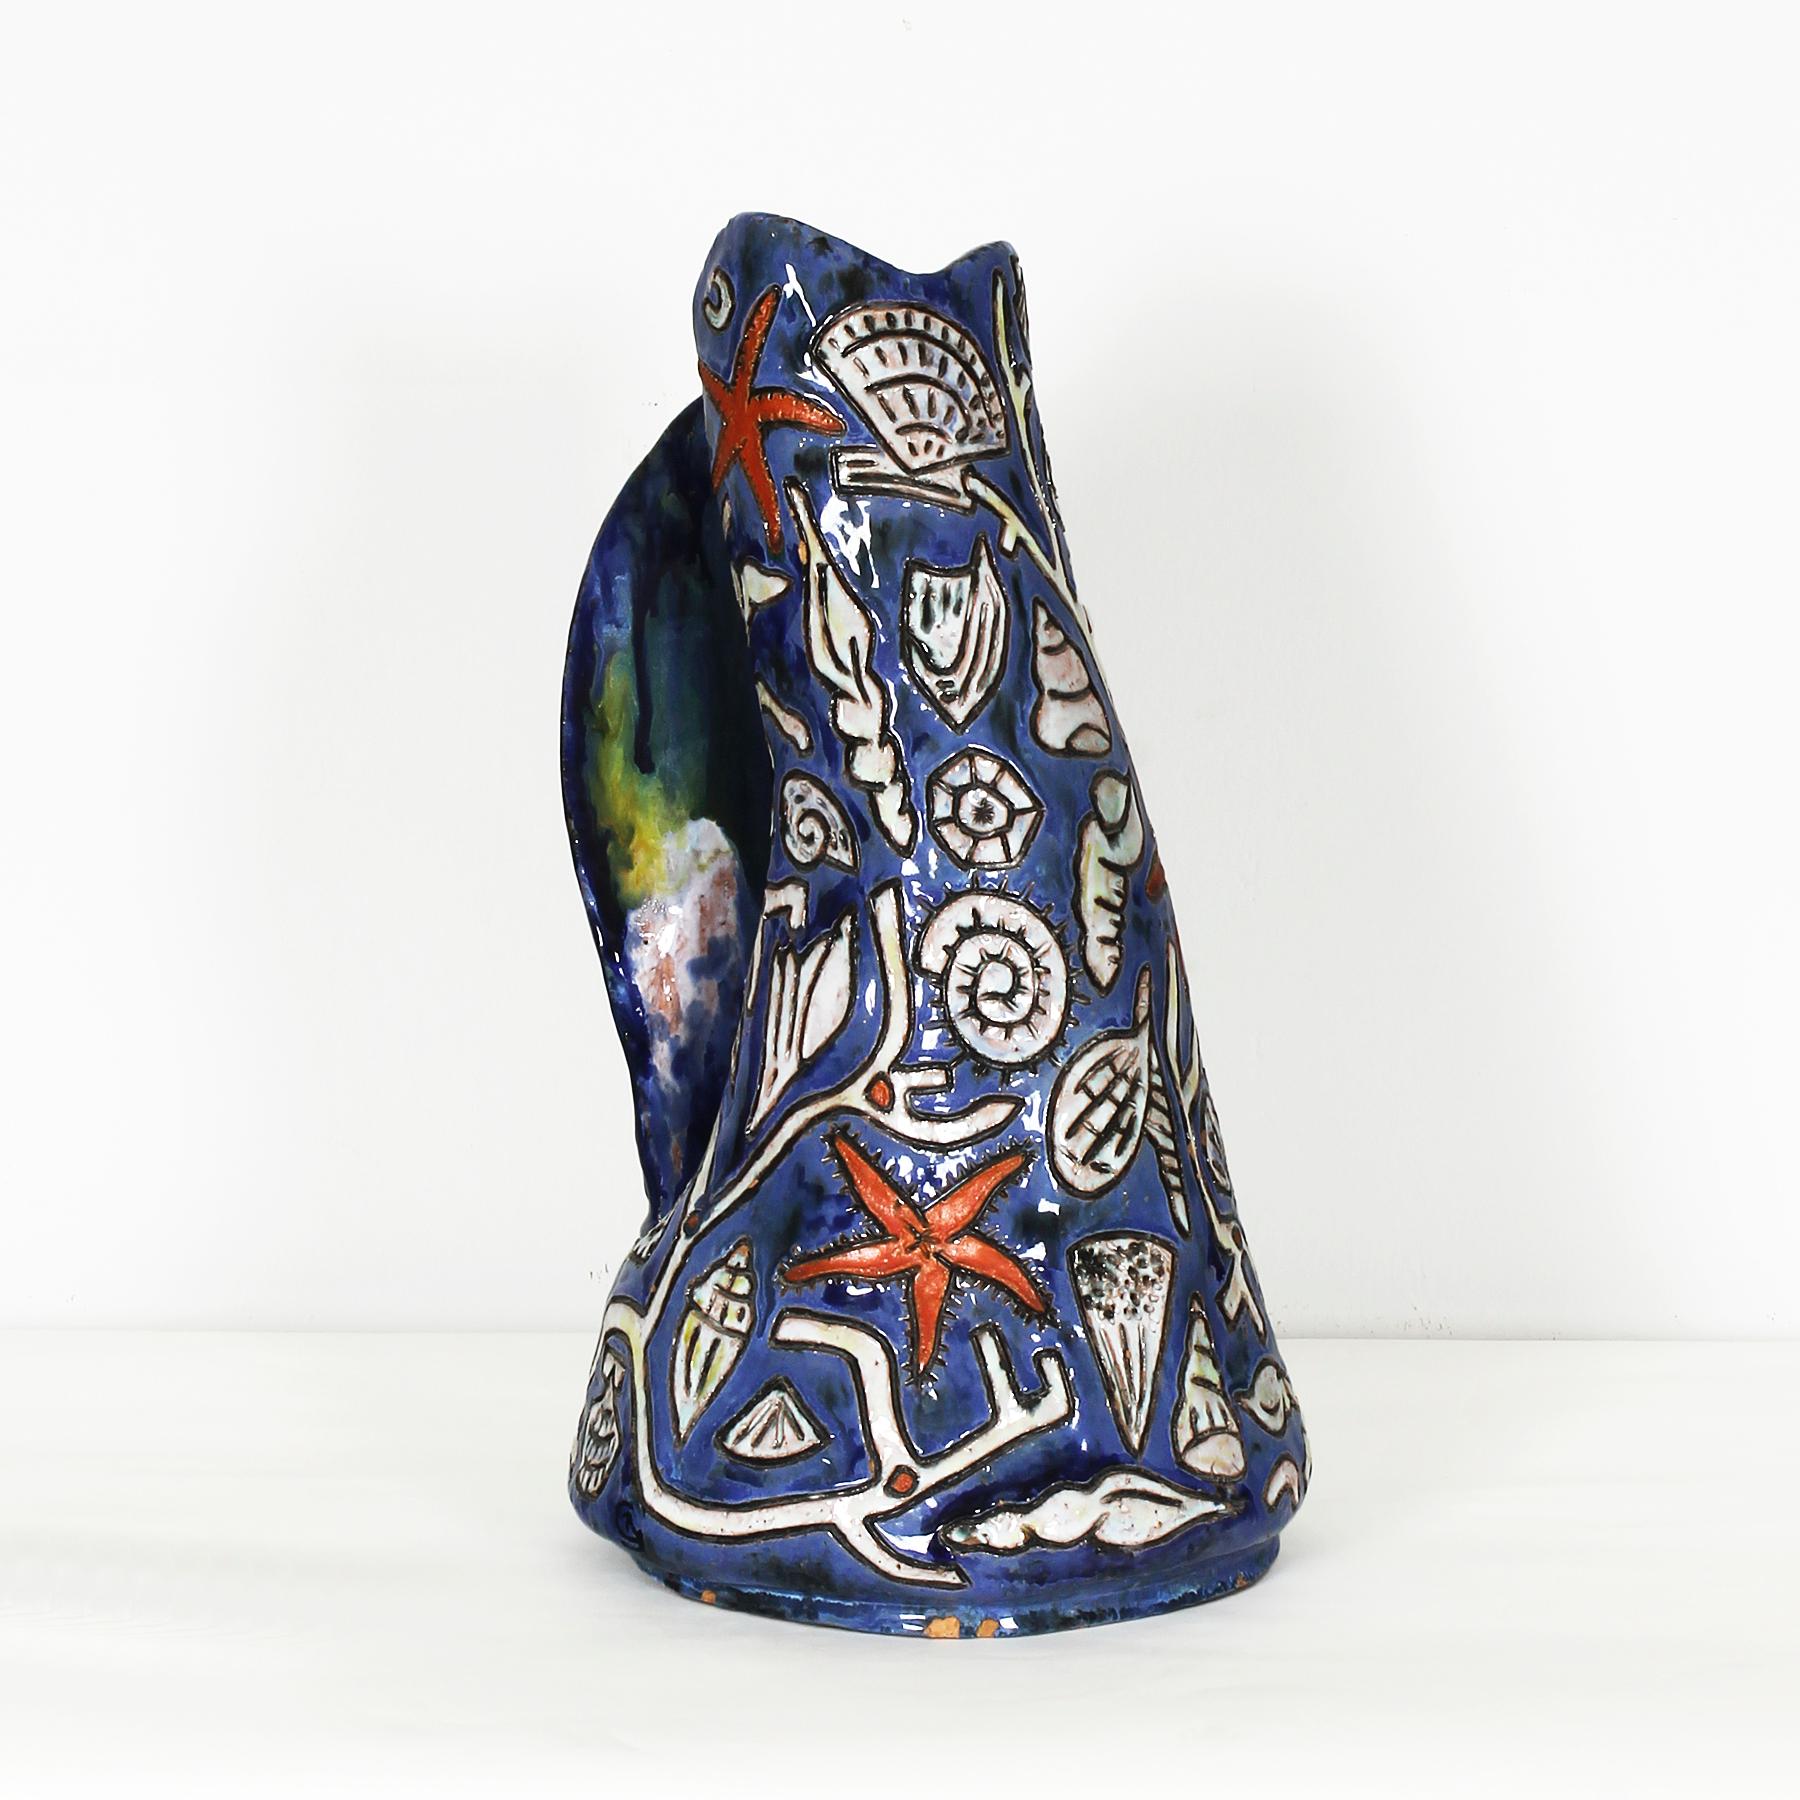 Spektakuläre emaillierte Keramik-Vase, mit Seesternen und Muscheln Dekoration, Zeichen auf dem Boden und Basis.
Design: Régil (unterzeichnet)

Frankreich, um 1960.